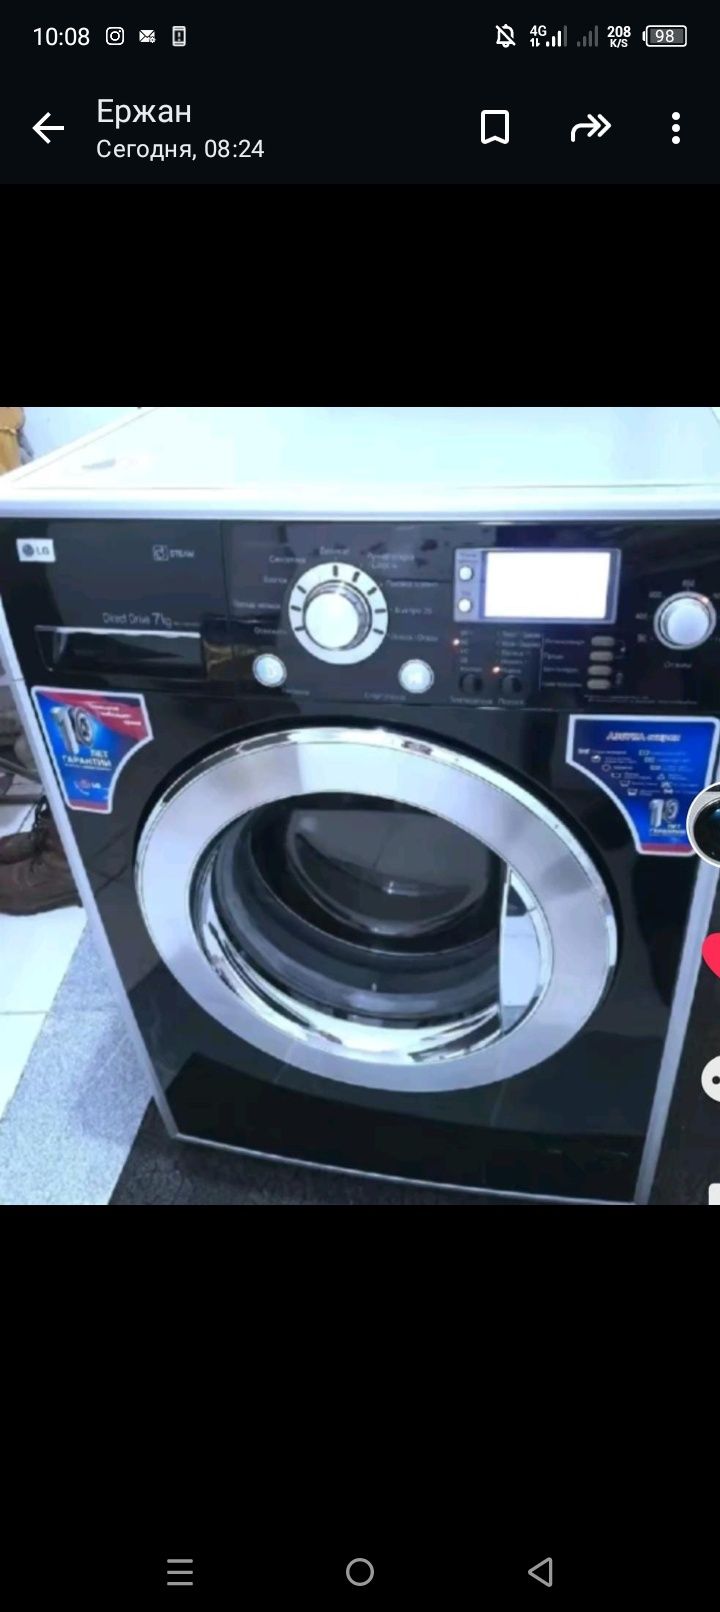 Продажа стиральных машин от 30 000тг
Есть гарантия и год сервисного об